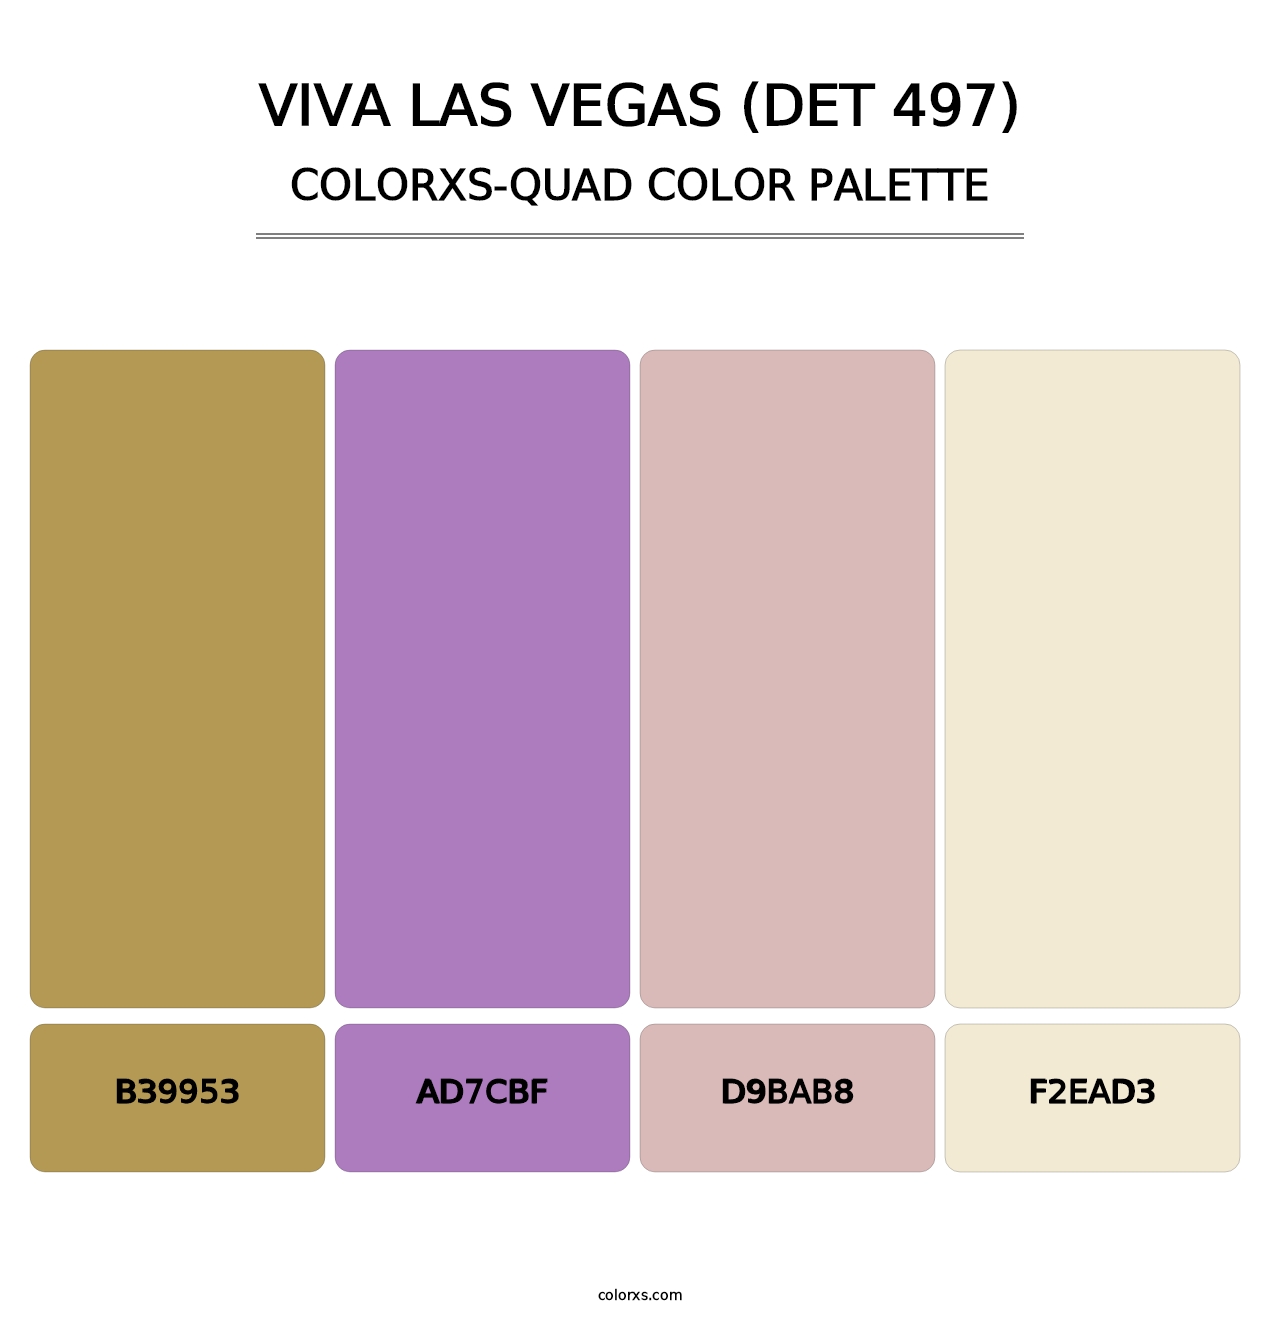 Viva Las Vegas (DET 497) - Colorxs Quad Palette